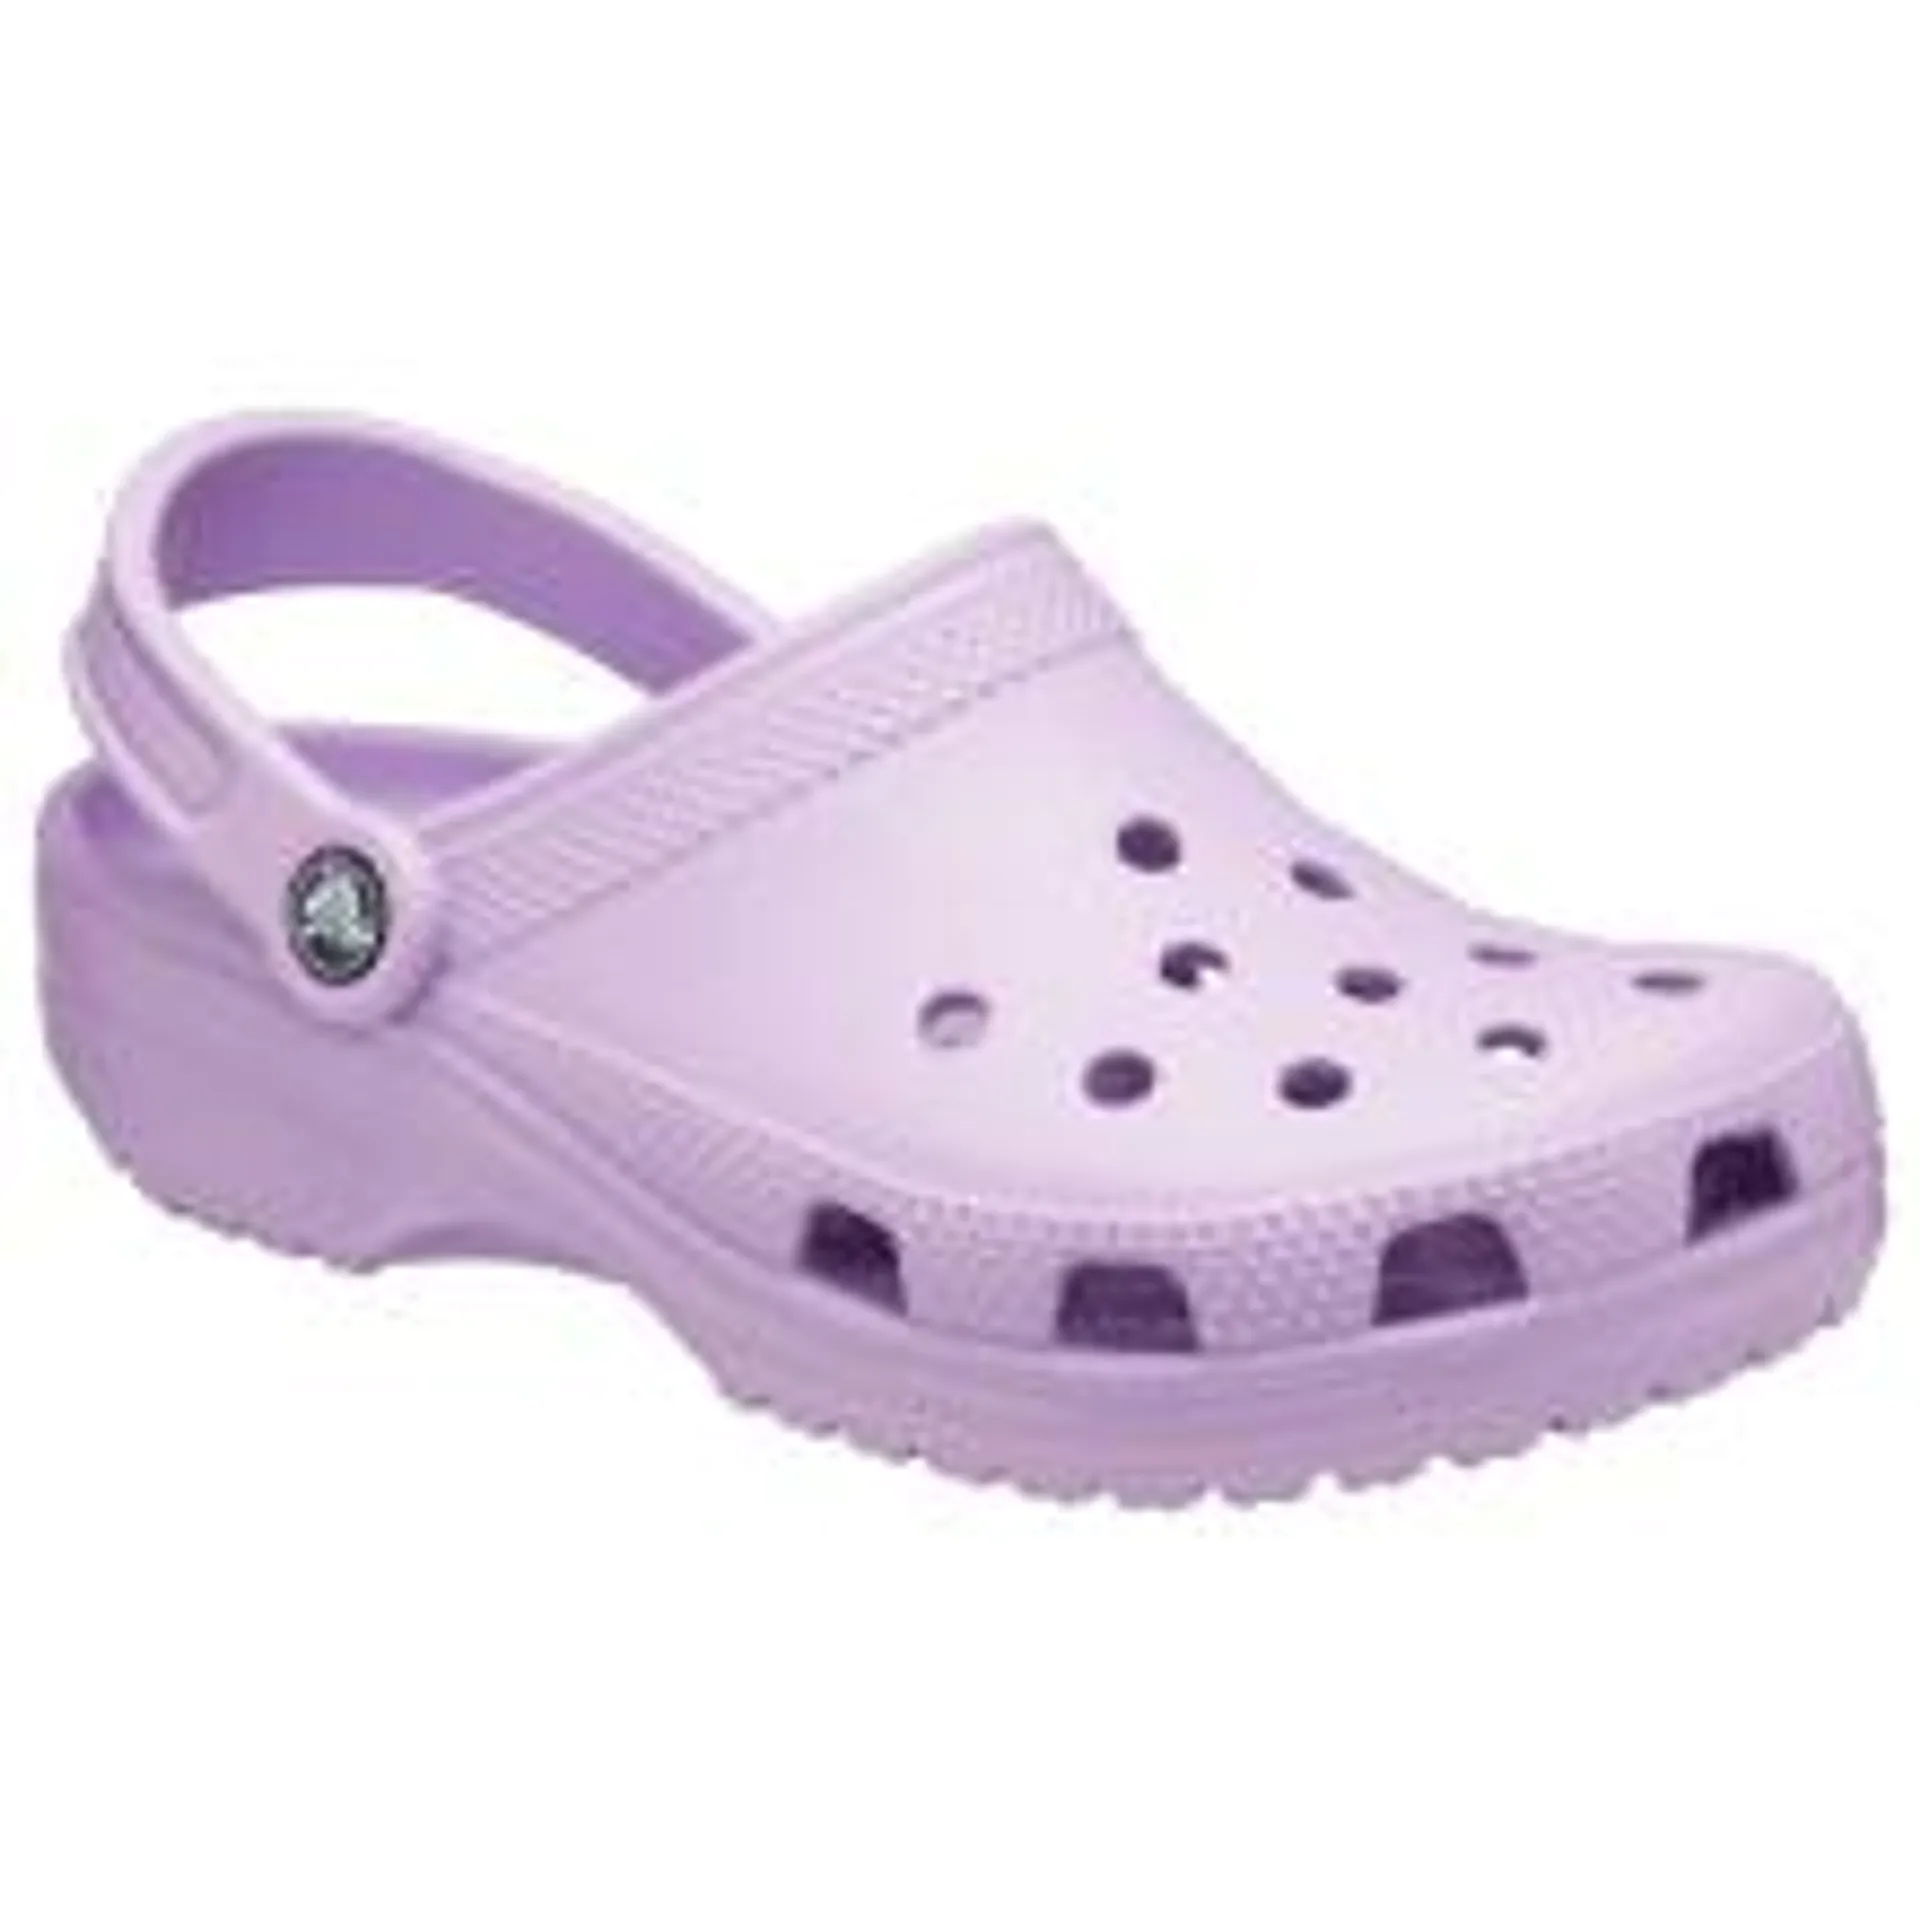 Crocs Classic Clogs for Ladies